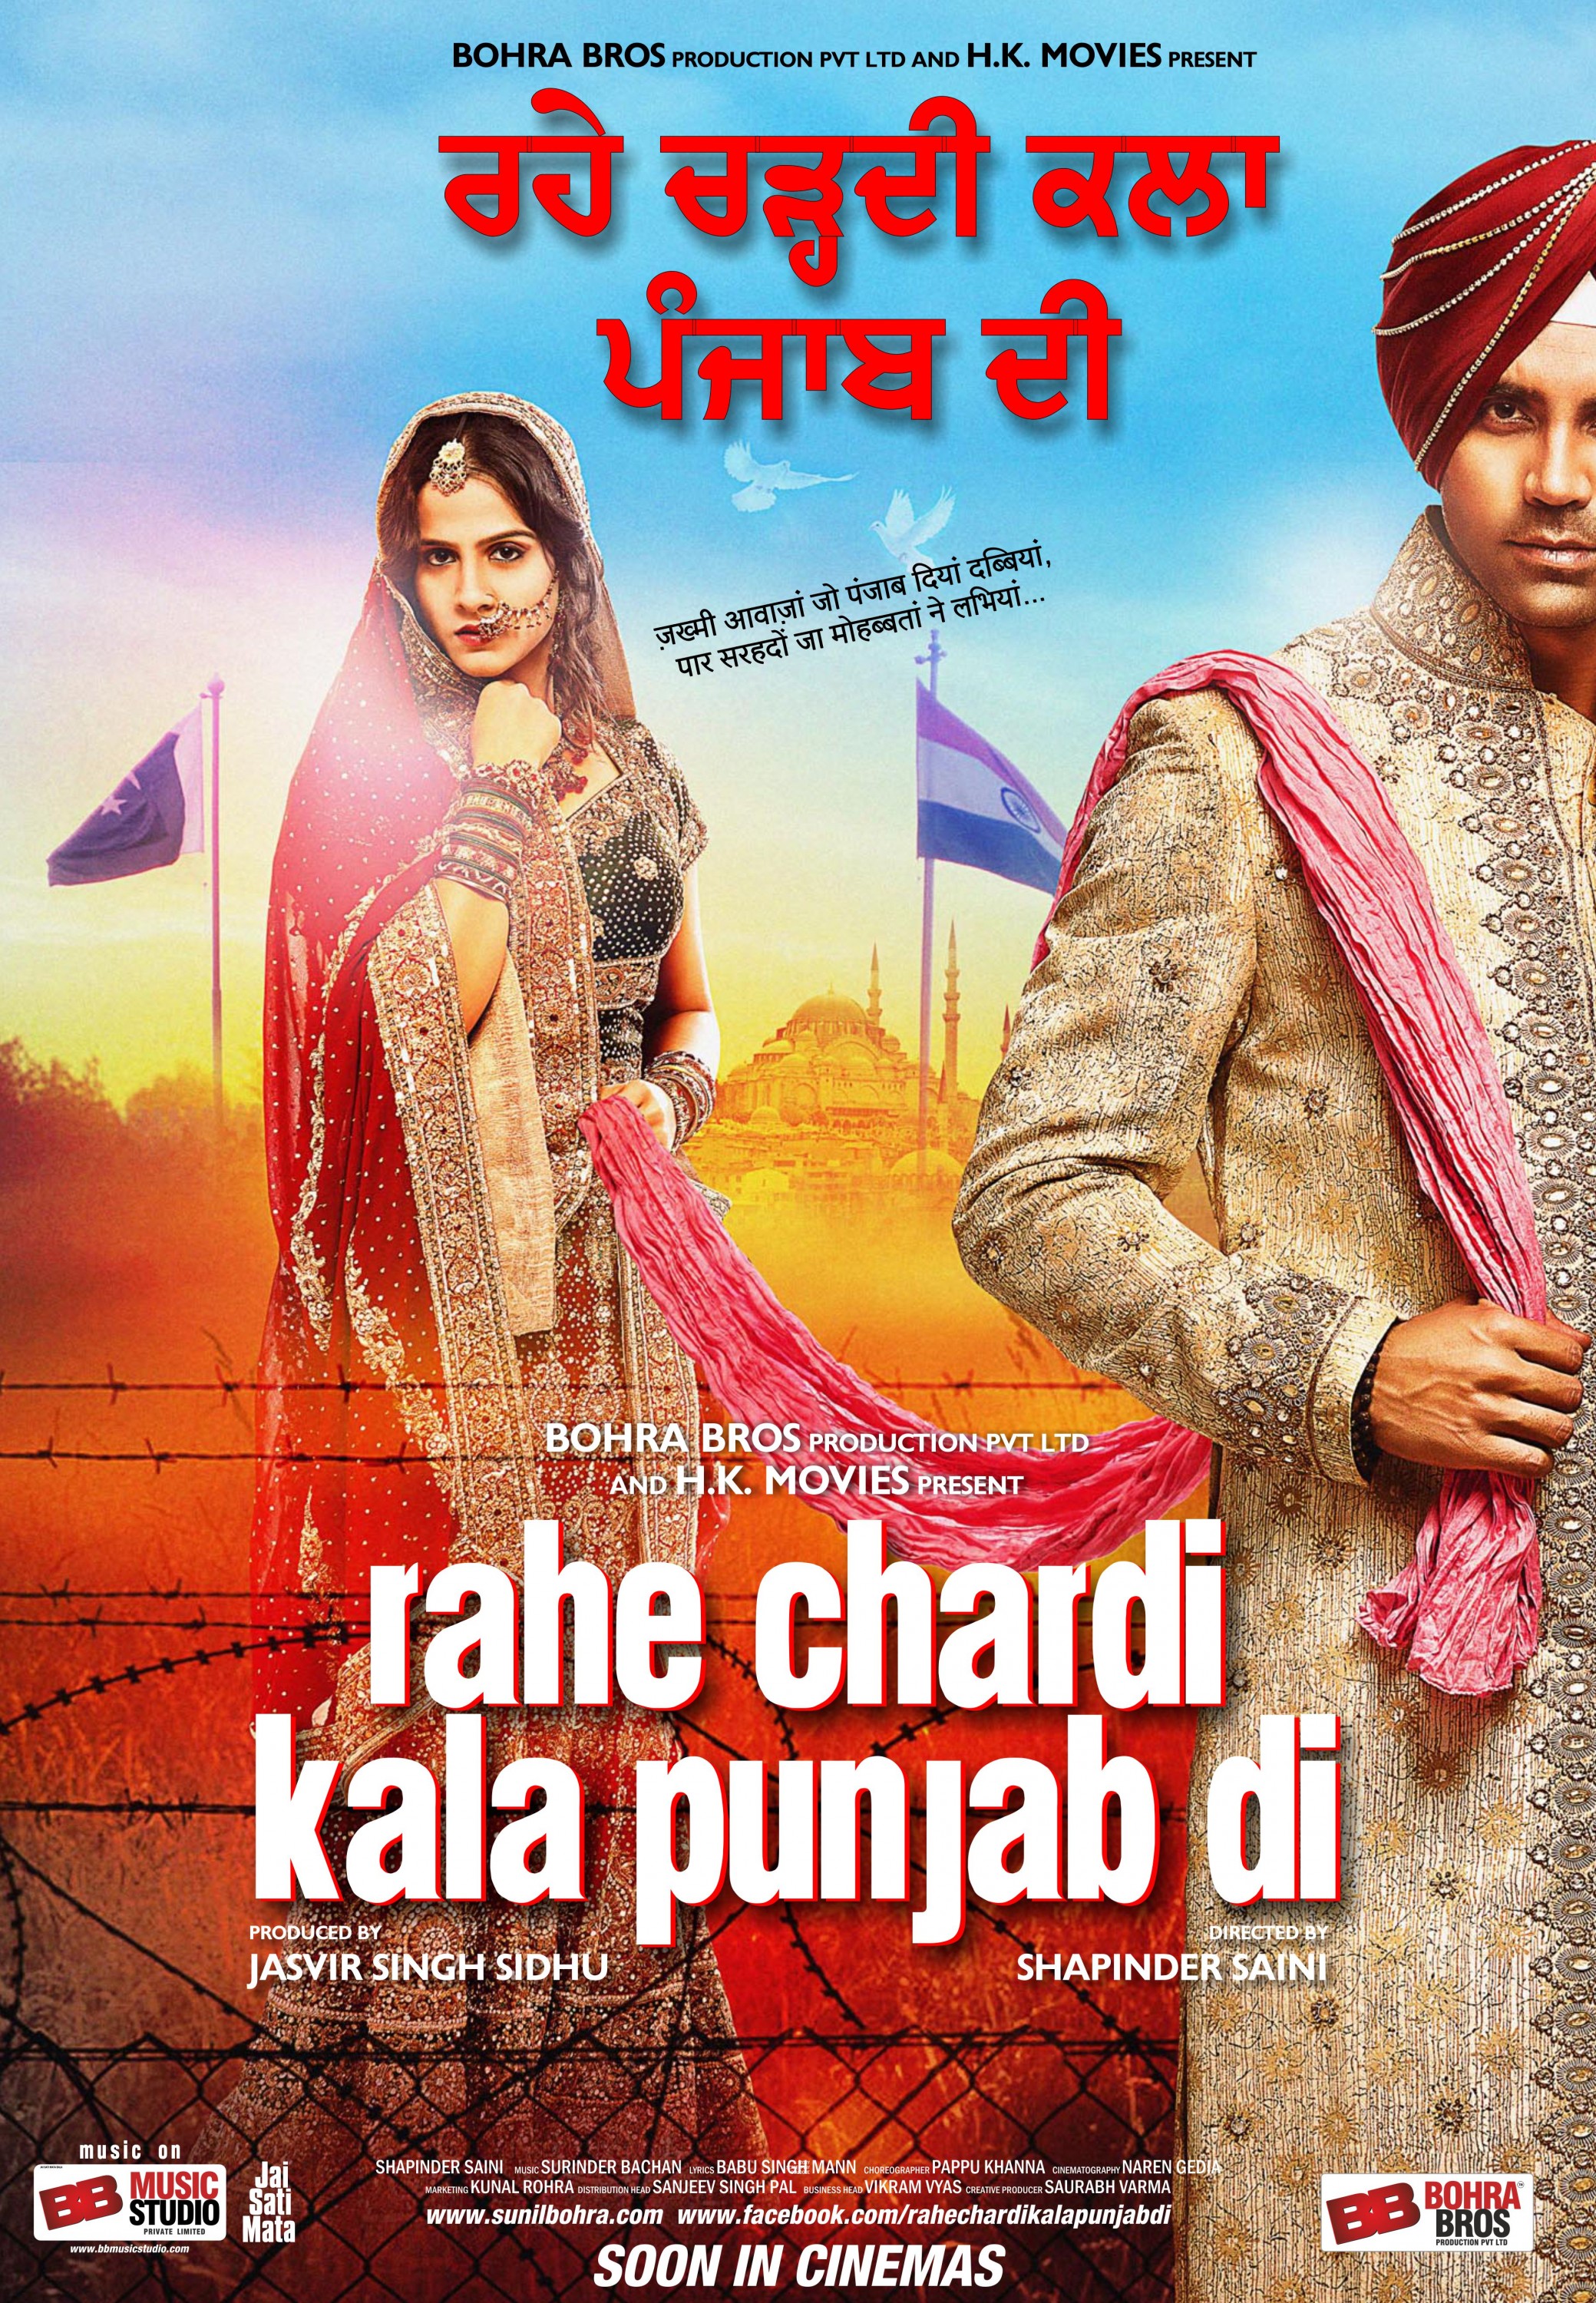 Mega Sized Movie Poster Image for Rahe Chardi Kala Punjab Di (#1 of 3)